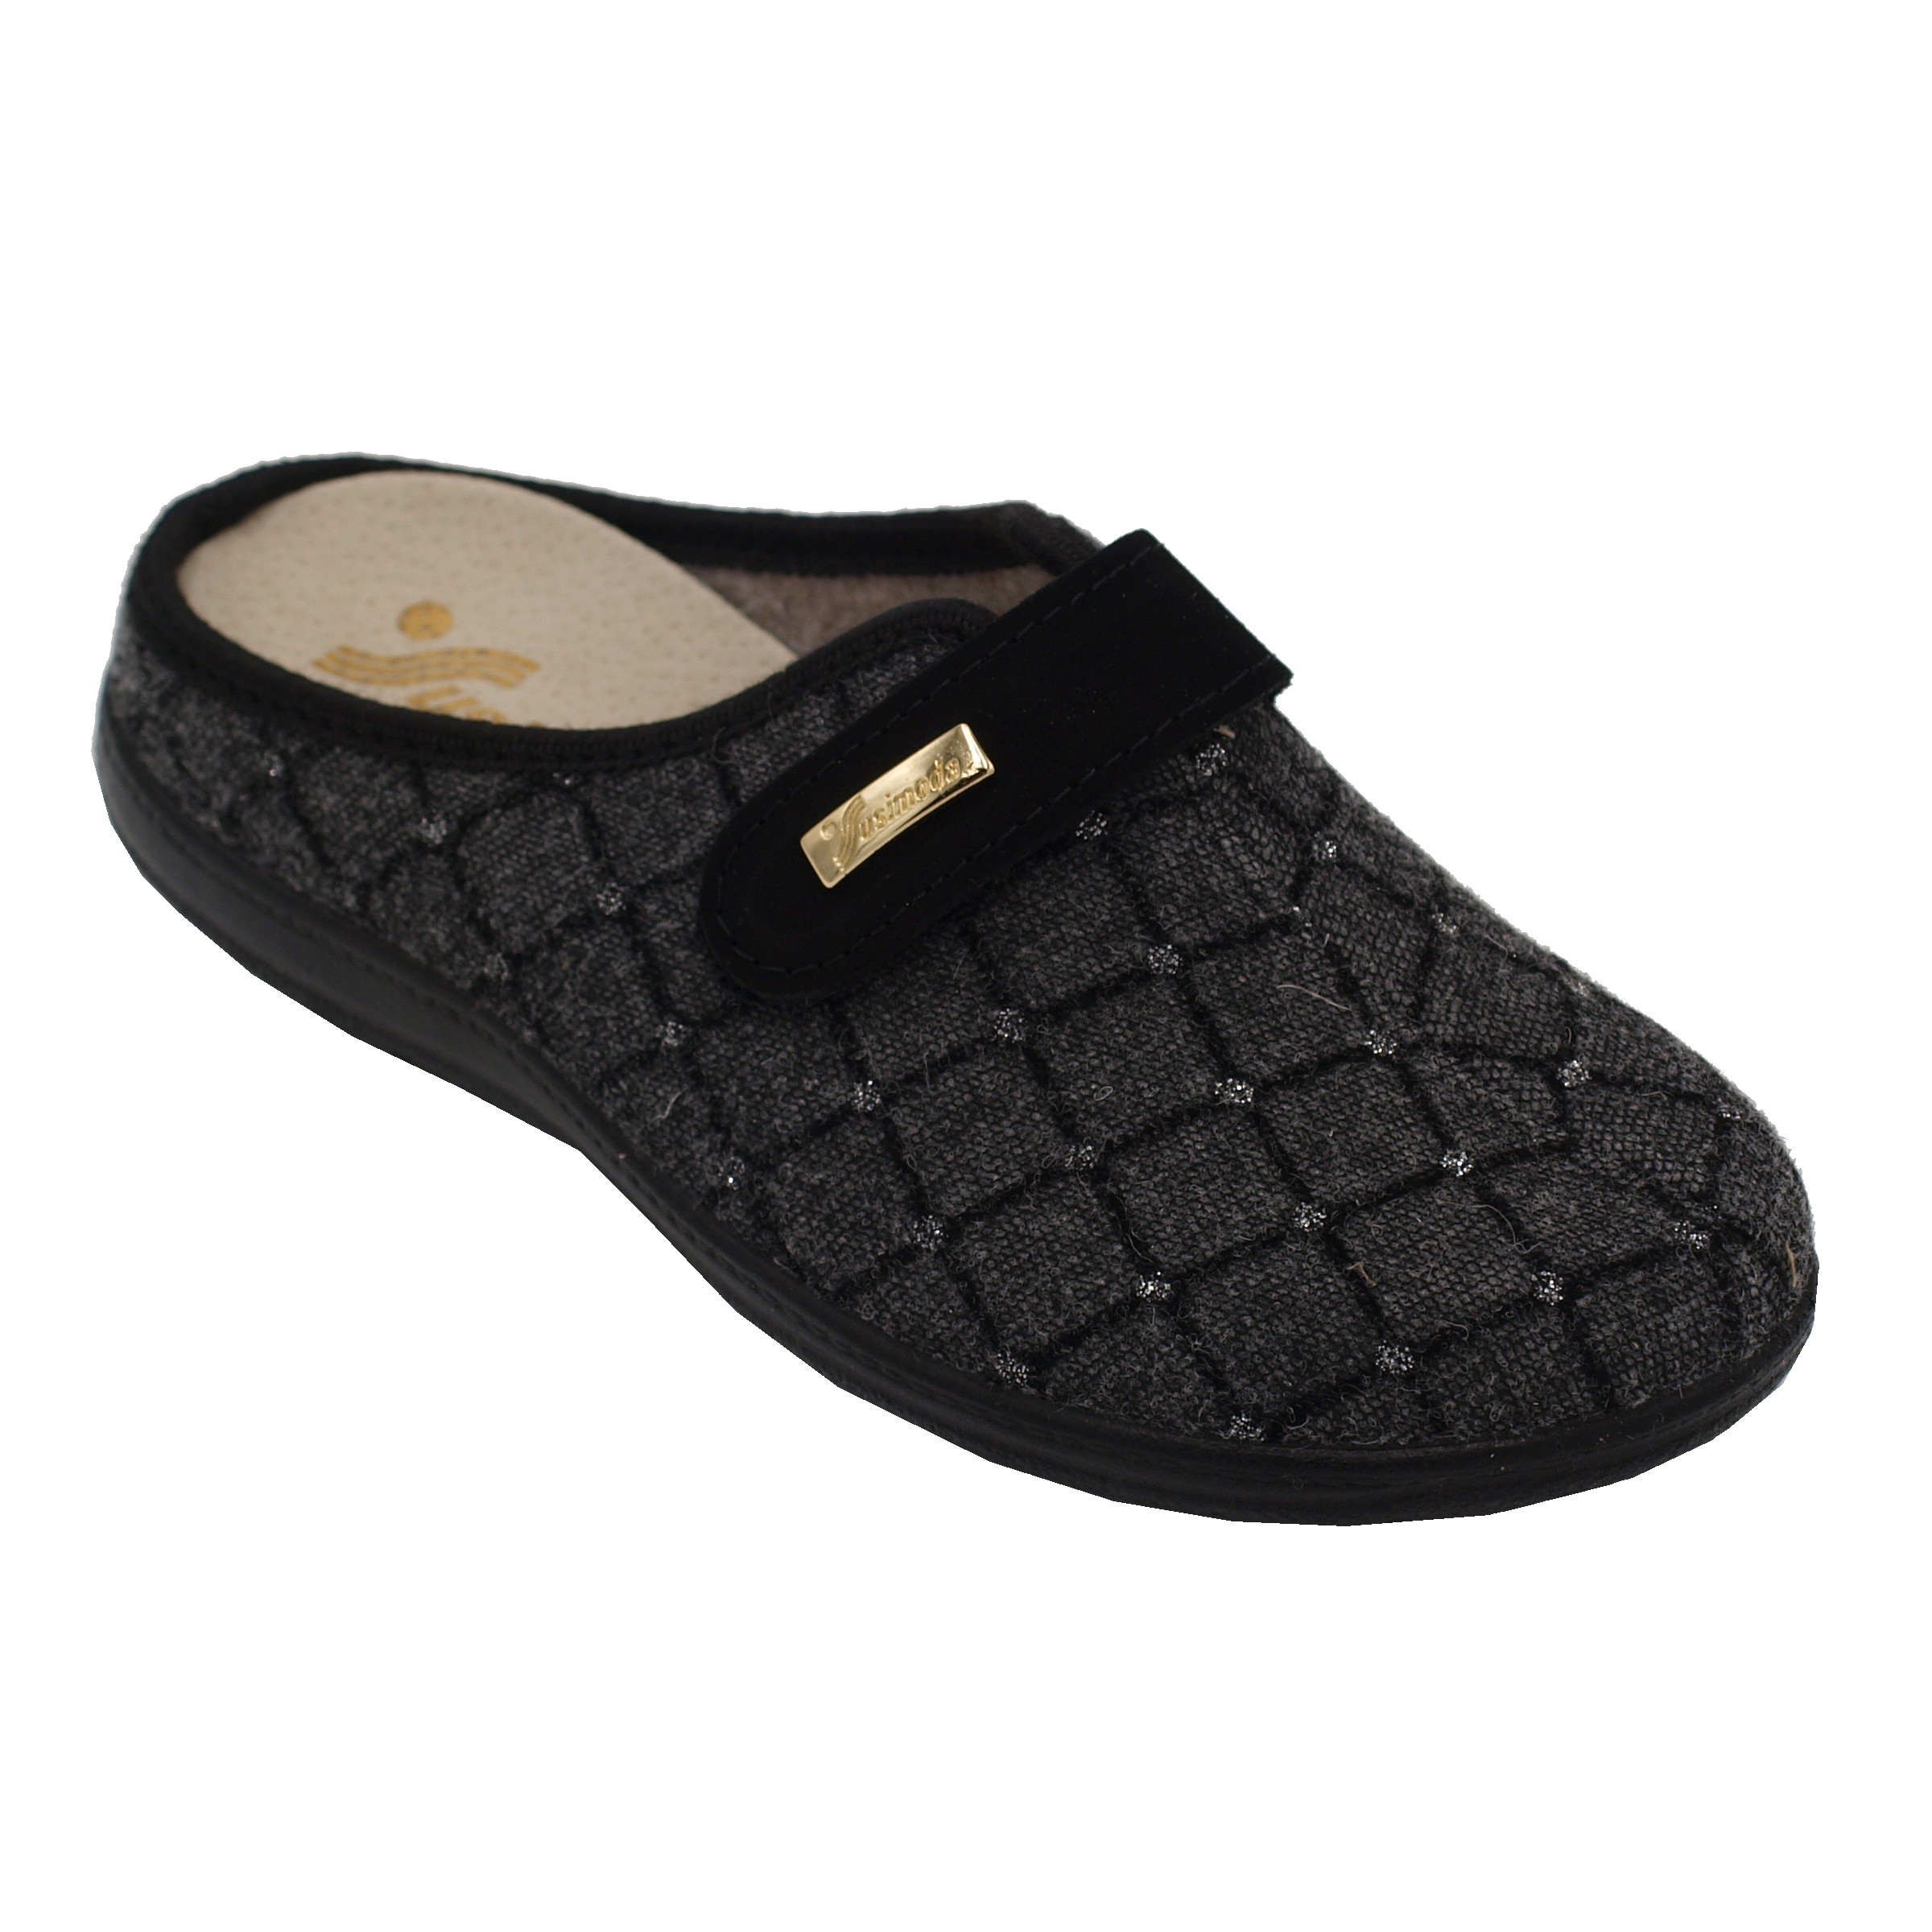 Ciabatte chiuse: SUSIMODA pantofole ciabatte in lana cotta colore nero  tacco basso 1-4 cm nr 42 numeri speciali